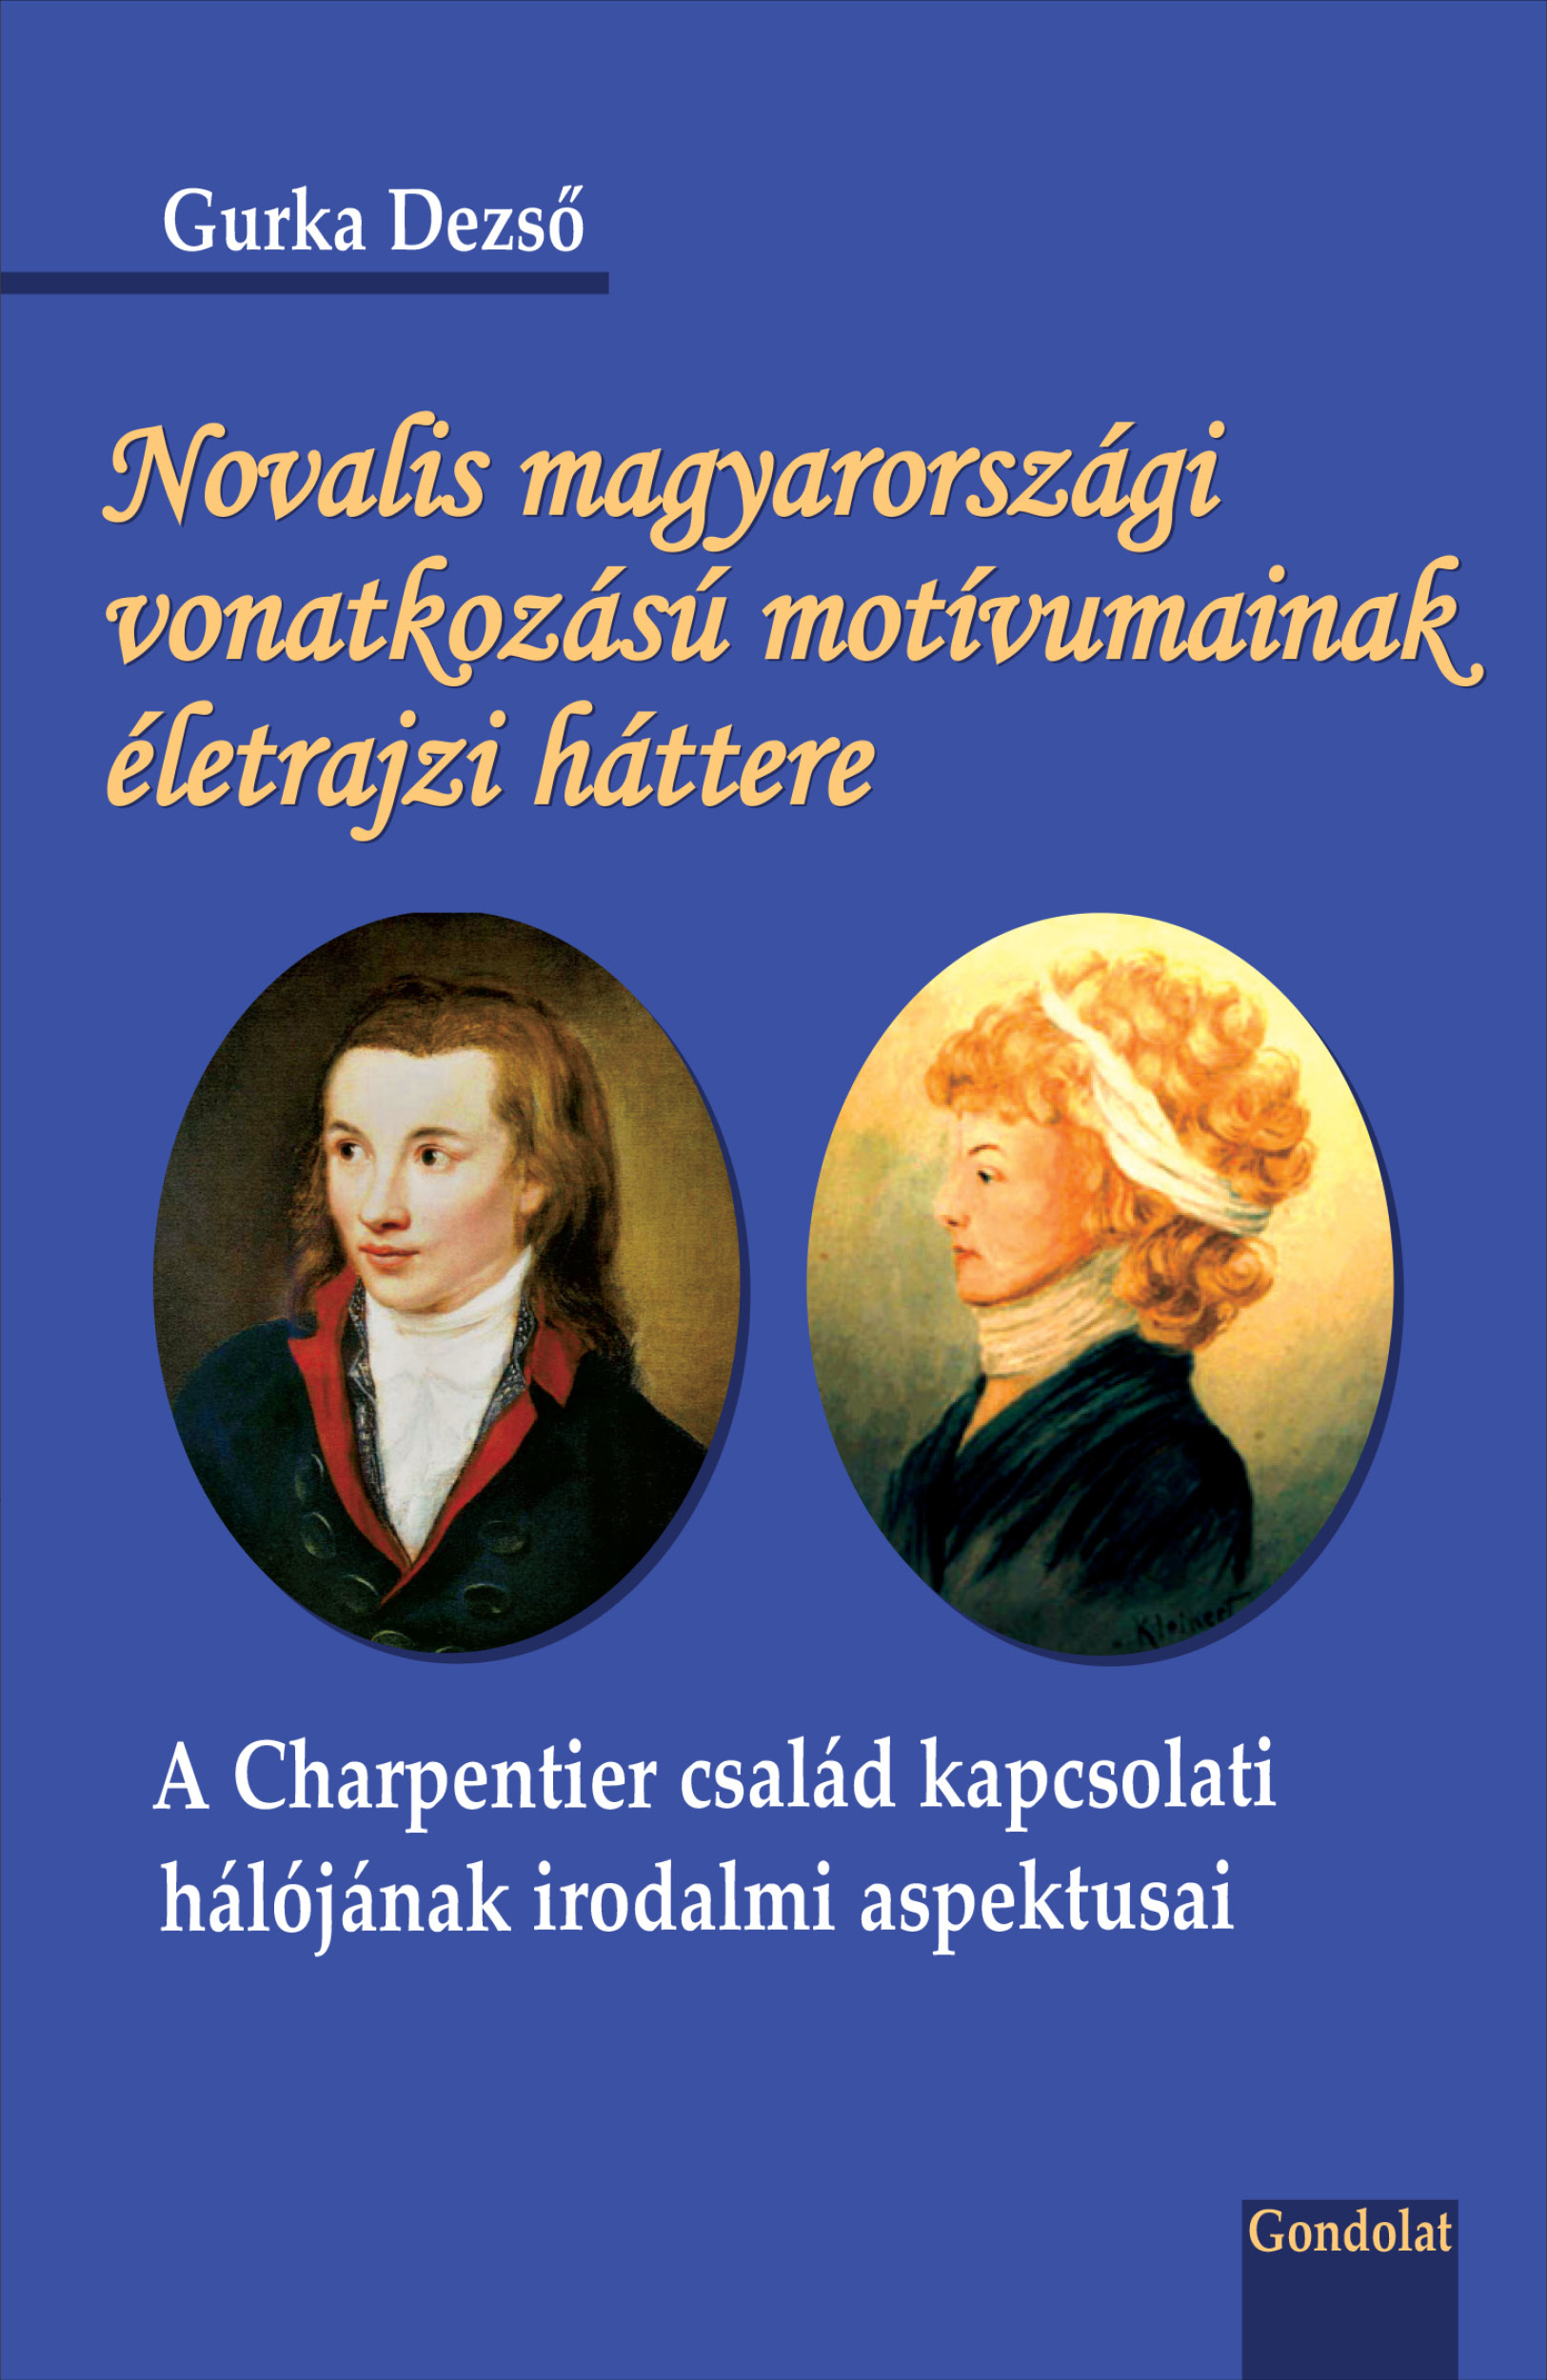 Novalis magyarországi vonatkozású motívumainak életrajzi háttere. A Charpentier család kapcsolati hálójának irodalmi aspektusai